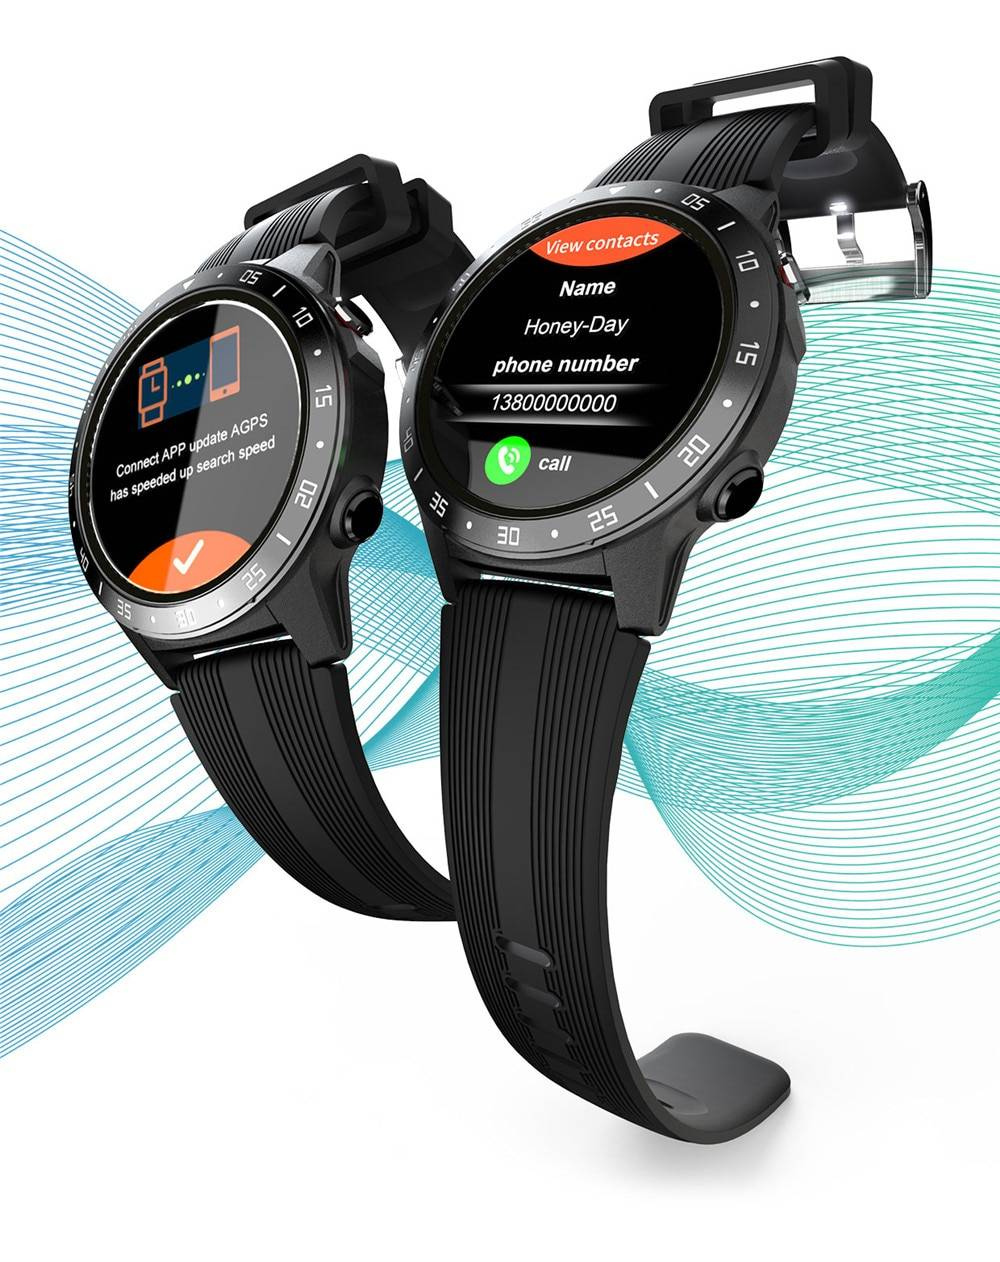 Sport montre intelligente hommes femmes fréquence cardiaque/surveillance de la pression artérielle gps fitness tracker étanche smartwatch android